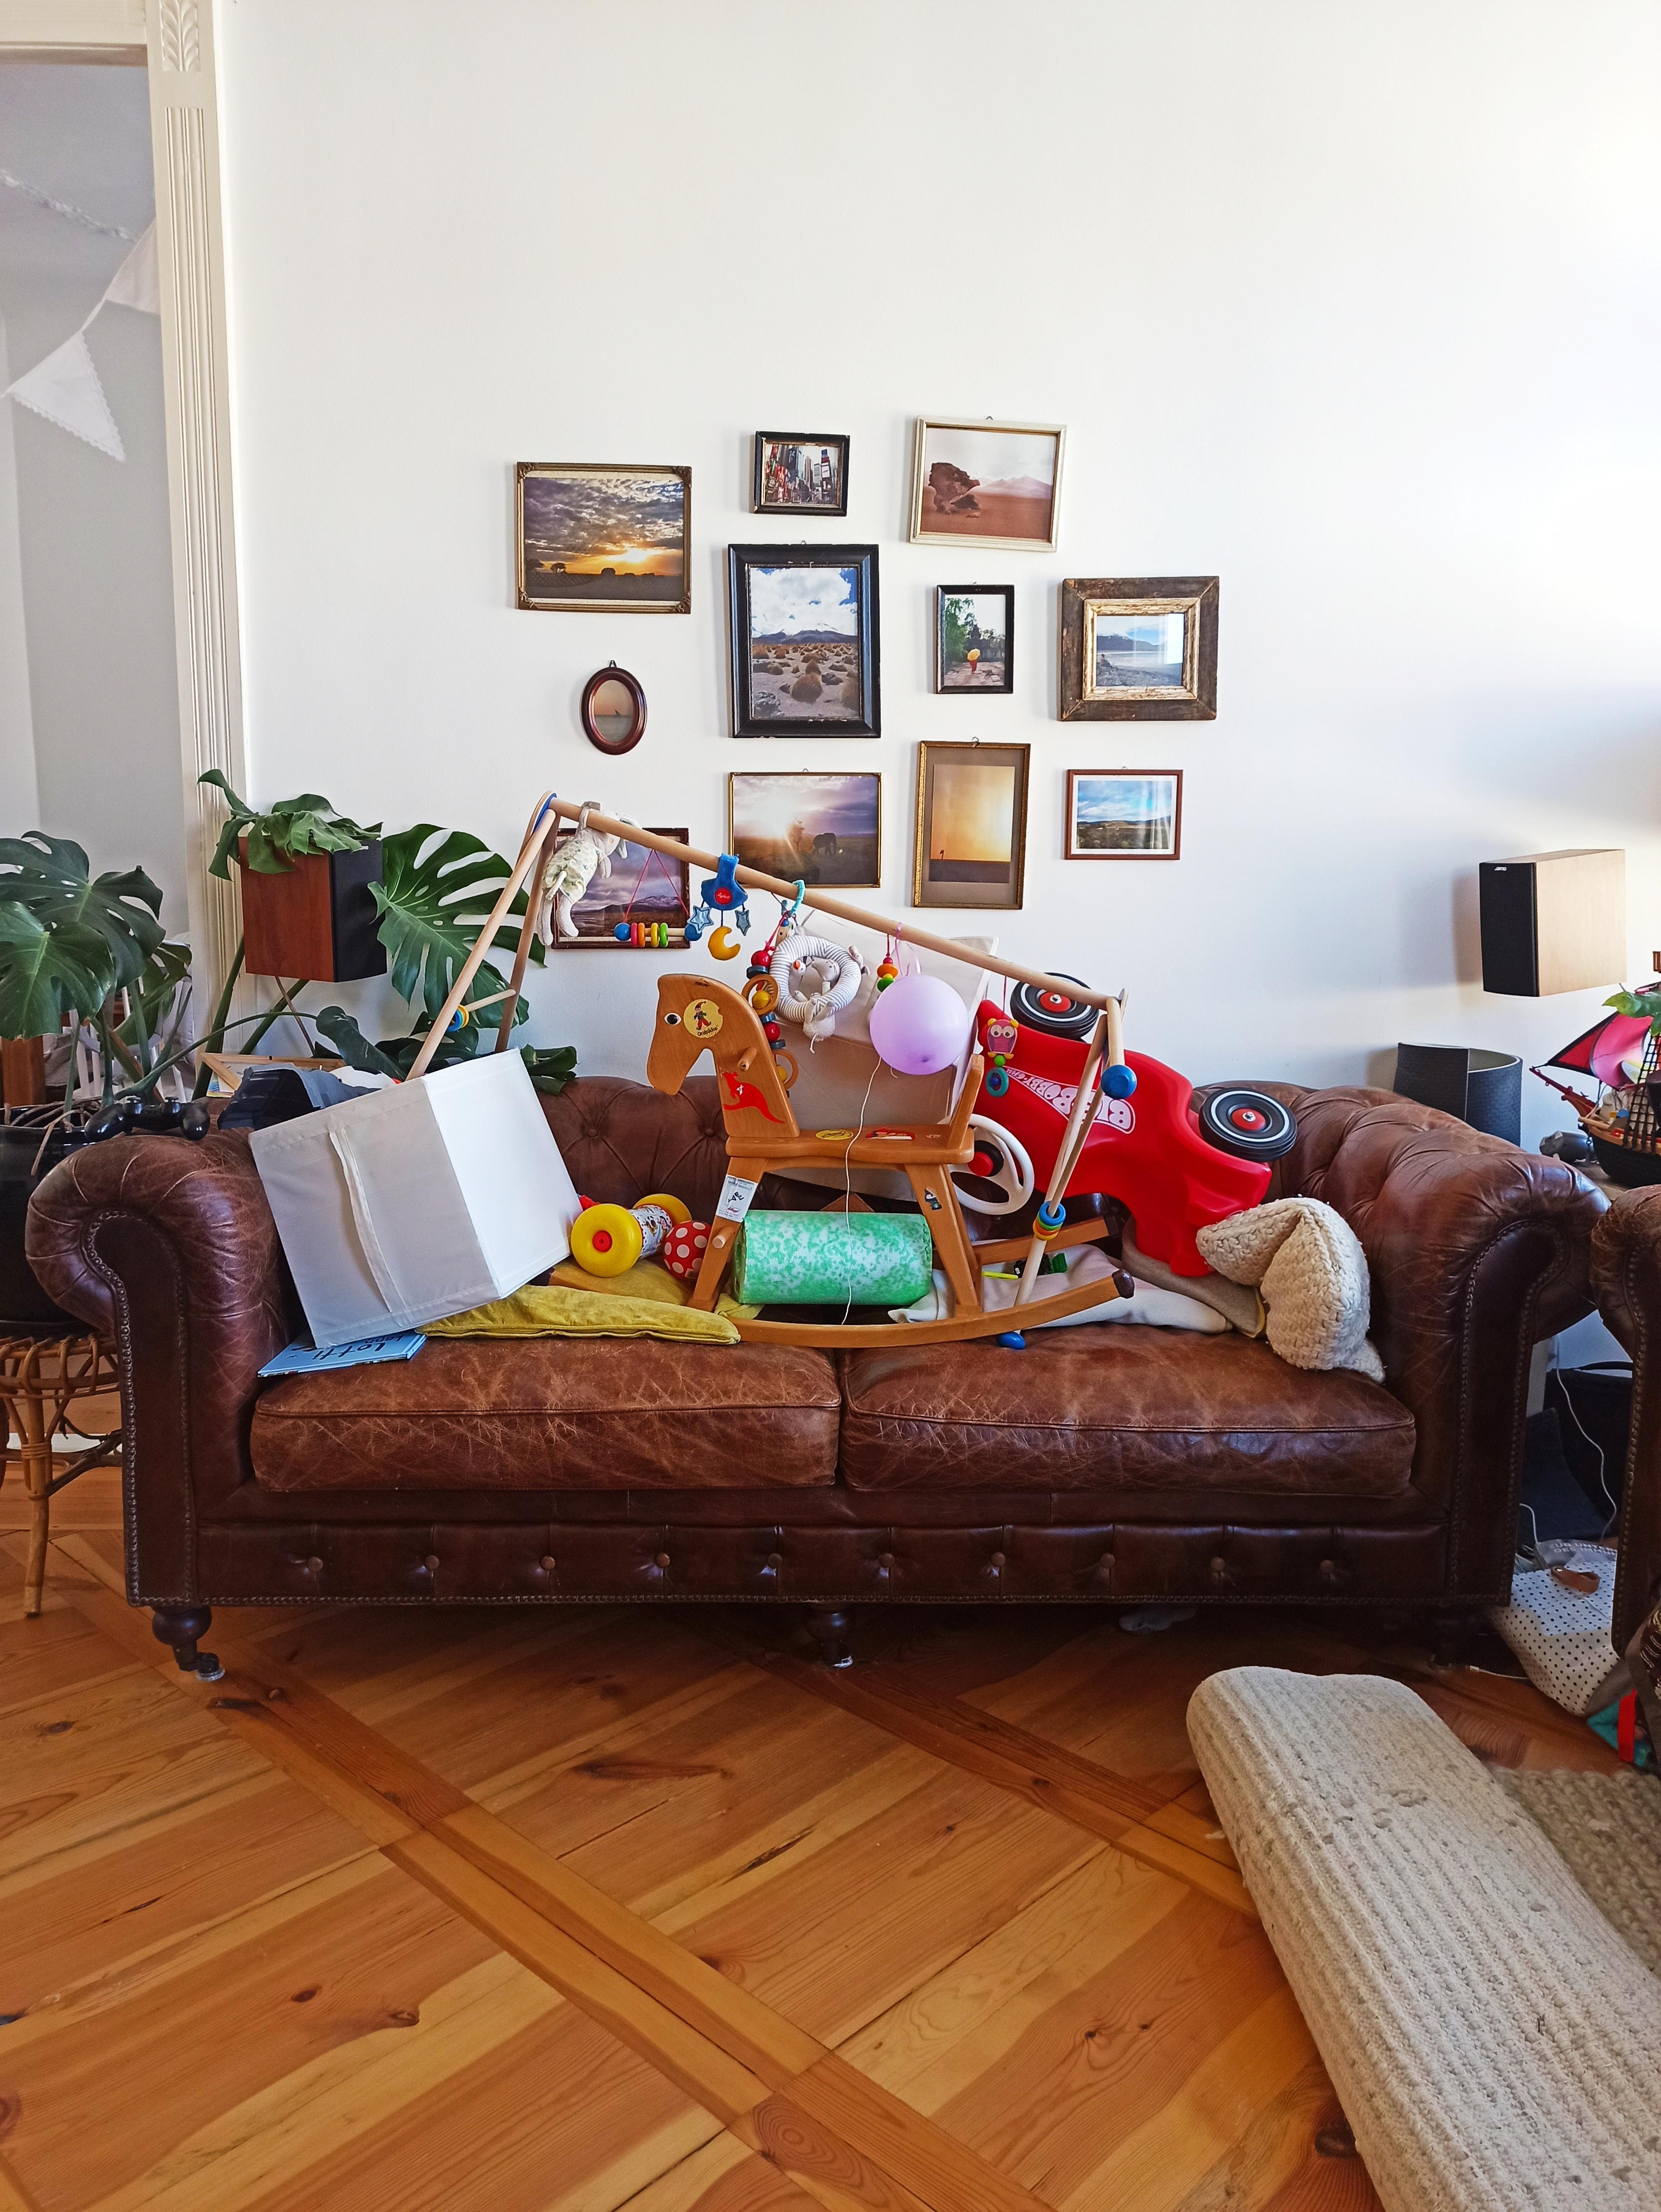 "Ich liiiebe putzen" - Zitat 4-jähriger 🤷😄 #wohnzimmer #couch #bilderwand #putzwahn